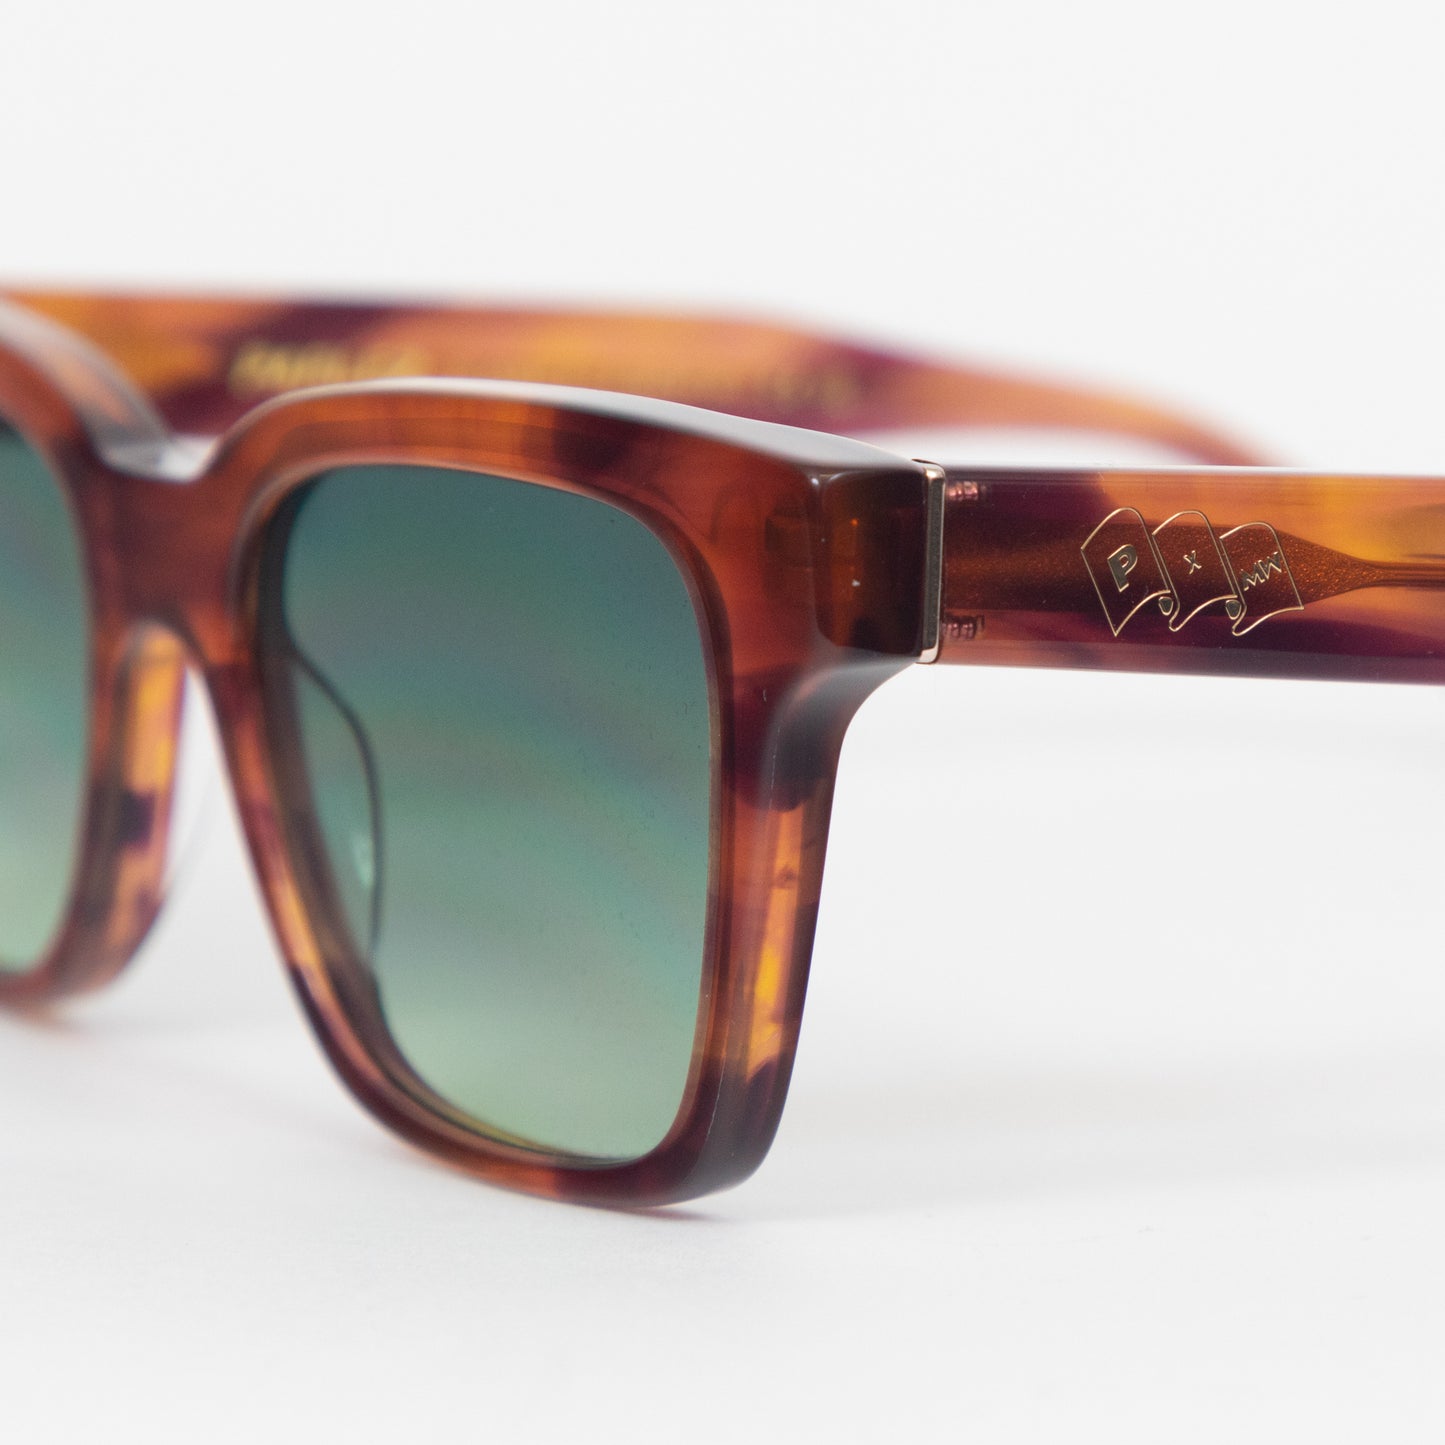 PARLEZ X MESSYWEEKEND Sunglasses Green Lense in BROWN HAVANA